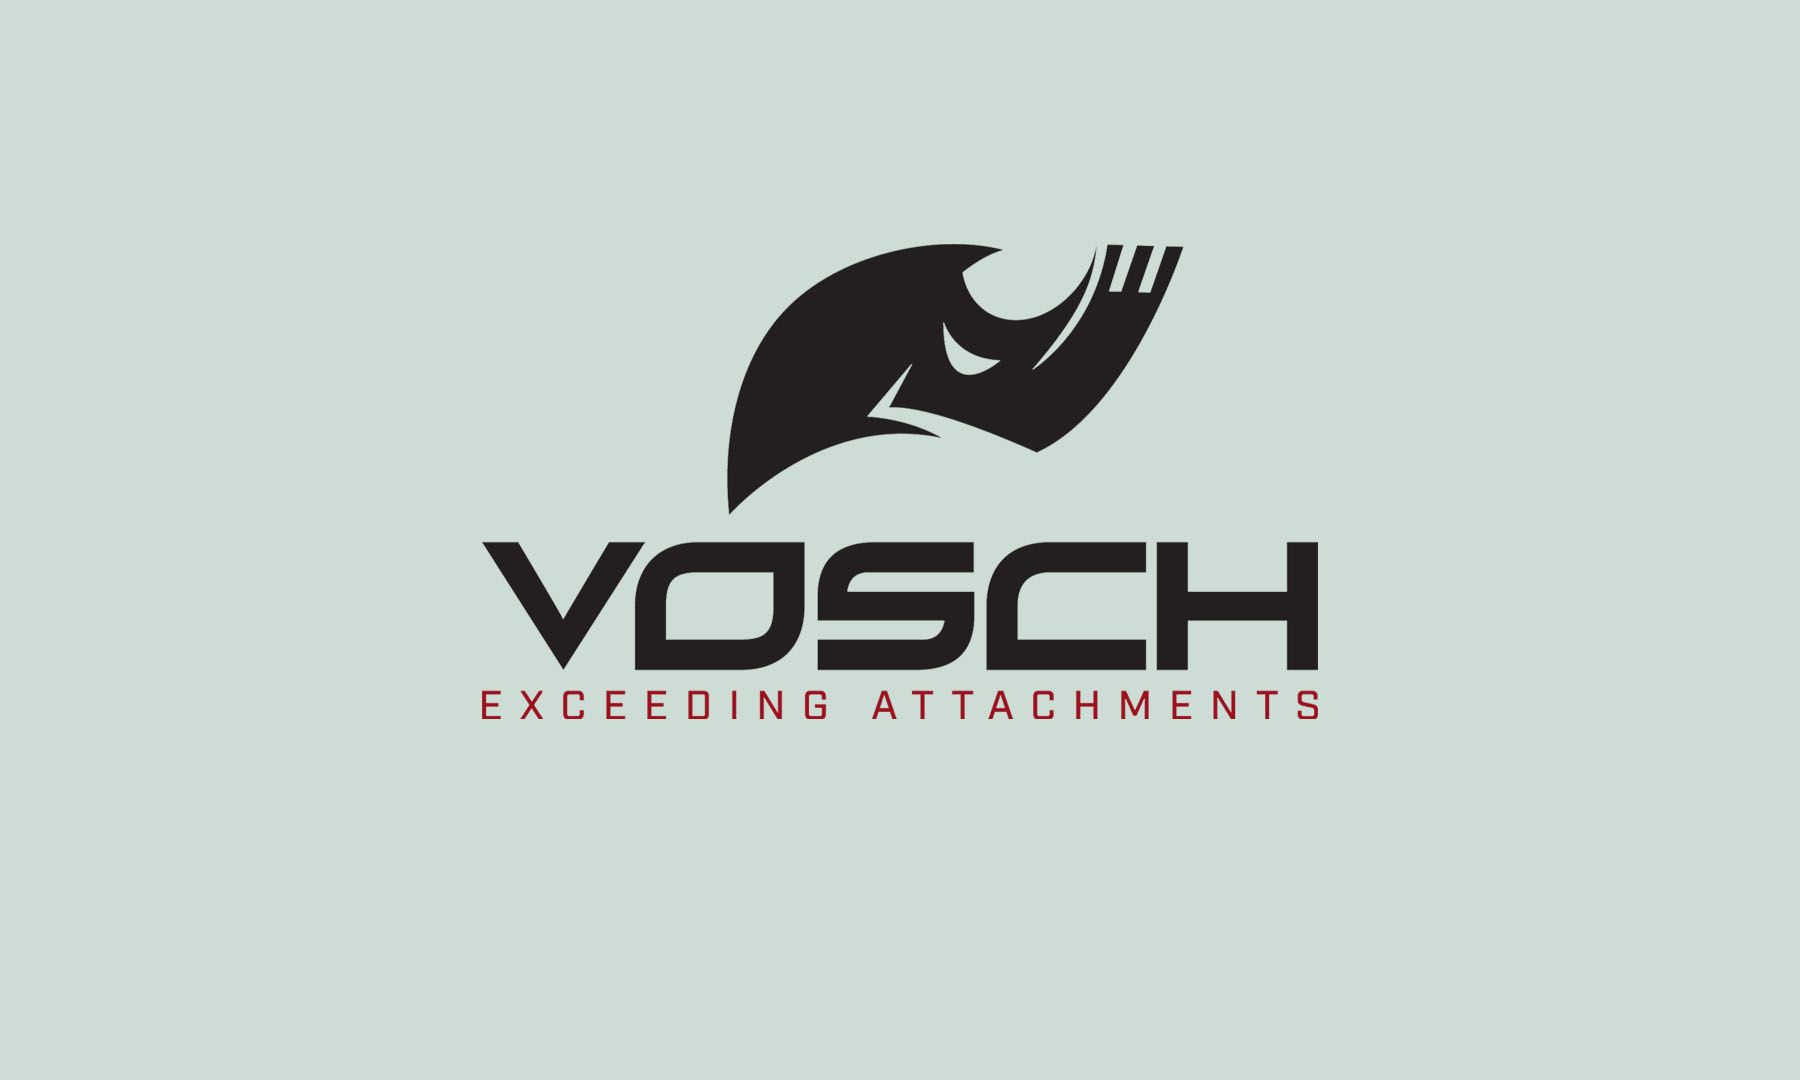 vosch exceeding attachments